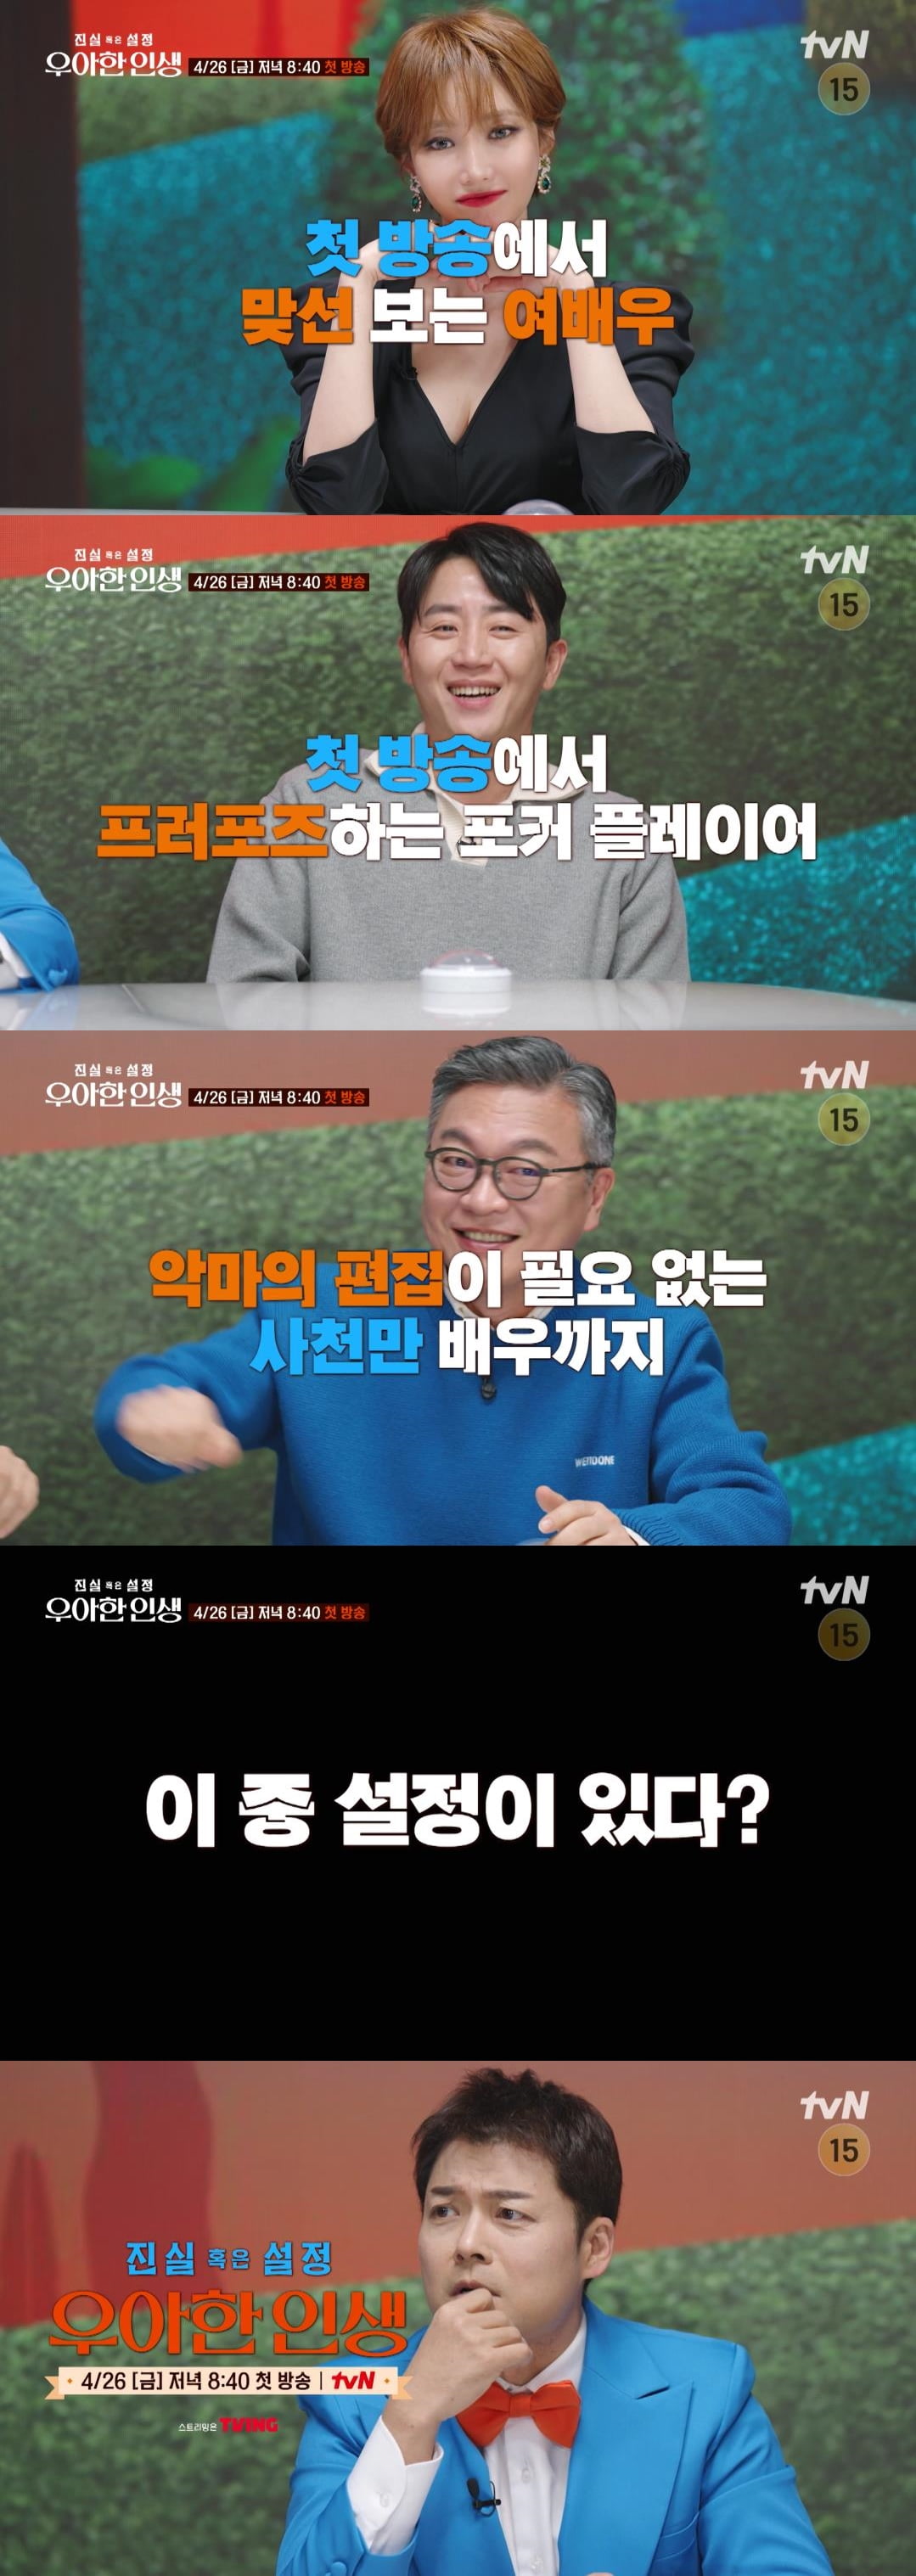 / 사진 제공: tvN  1회 예고 영상 캡처